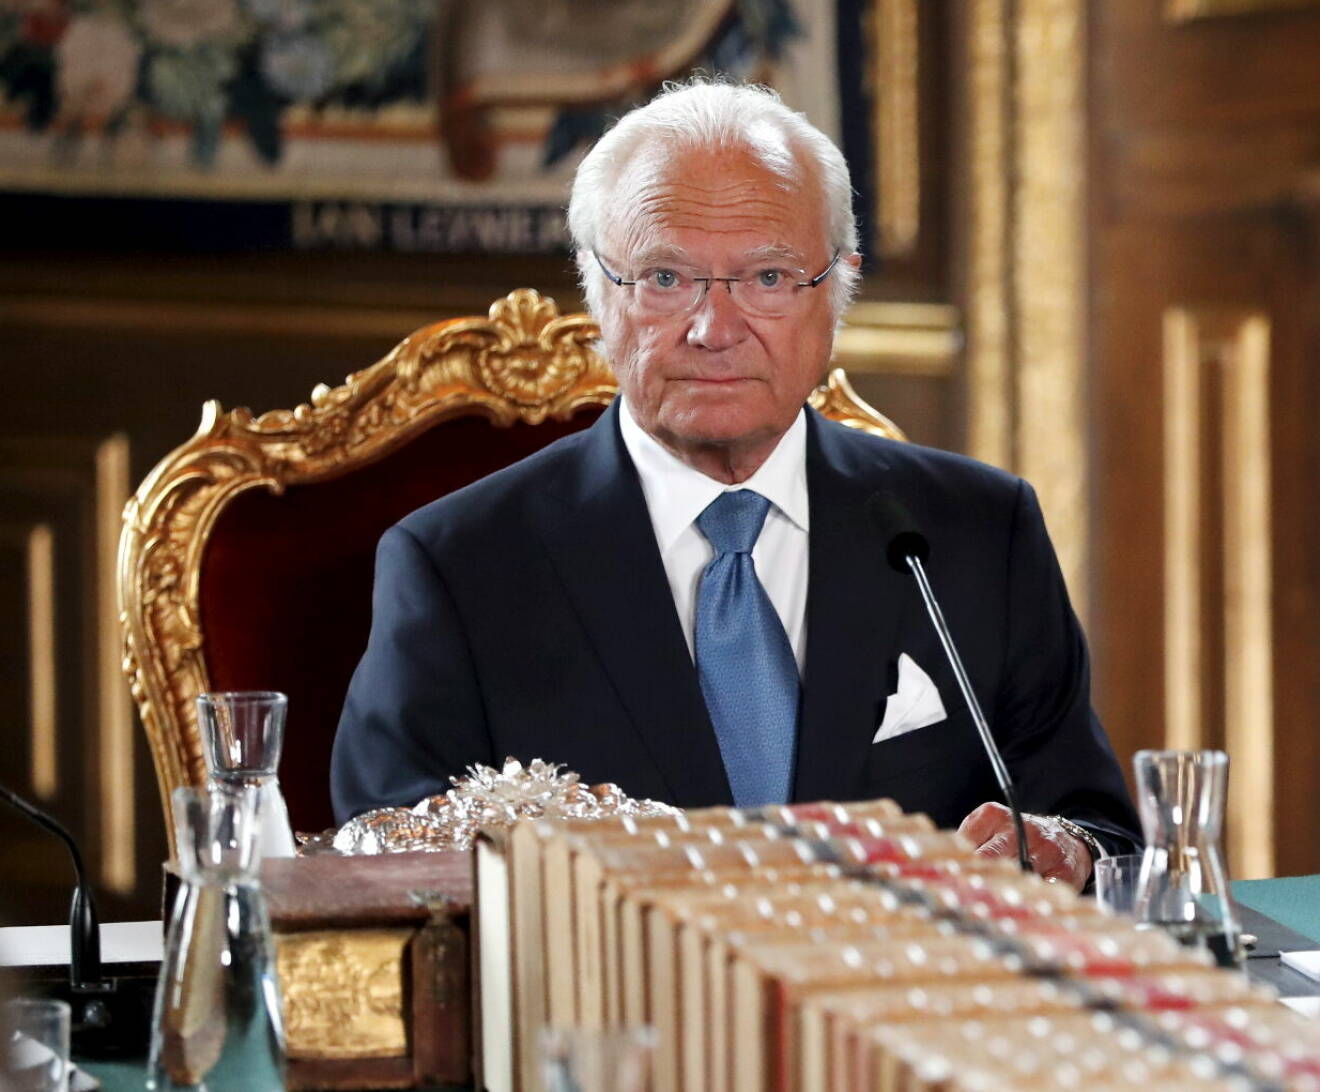 Kungen, Sverige statschef, under en konselj på slottet